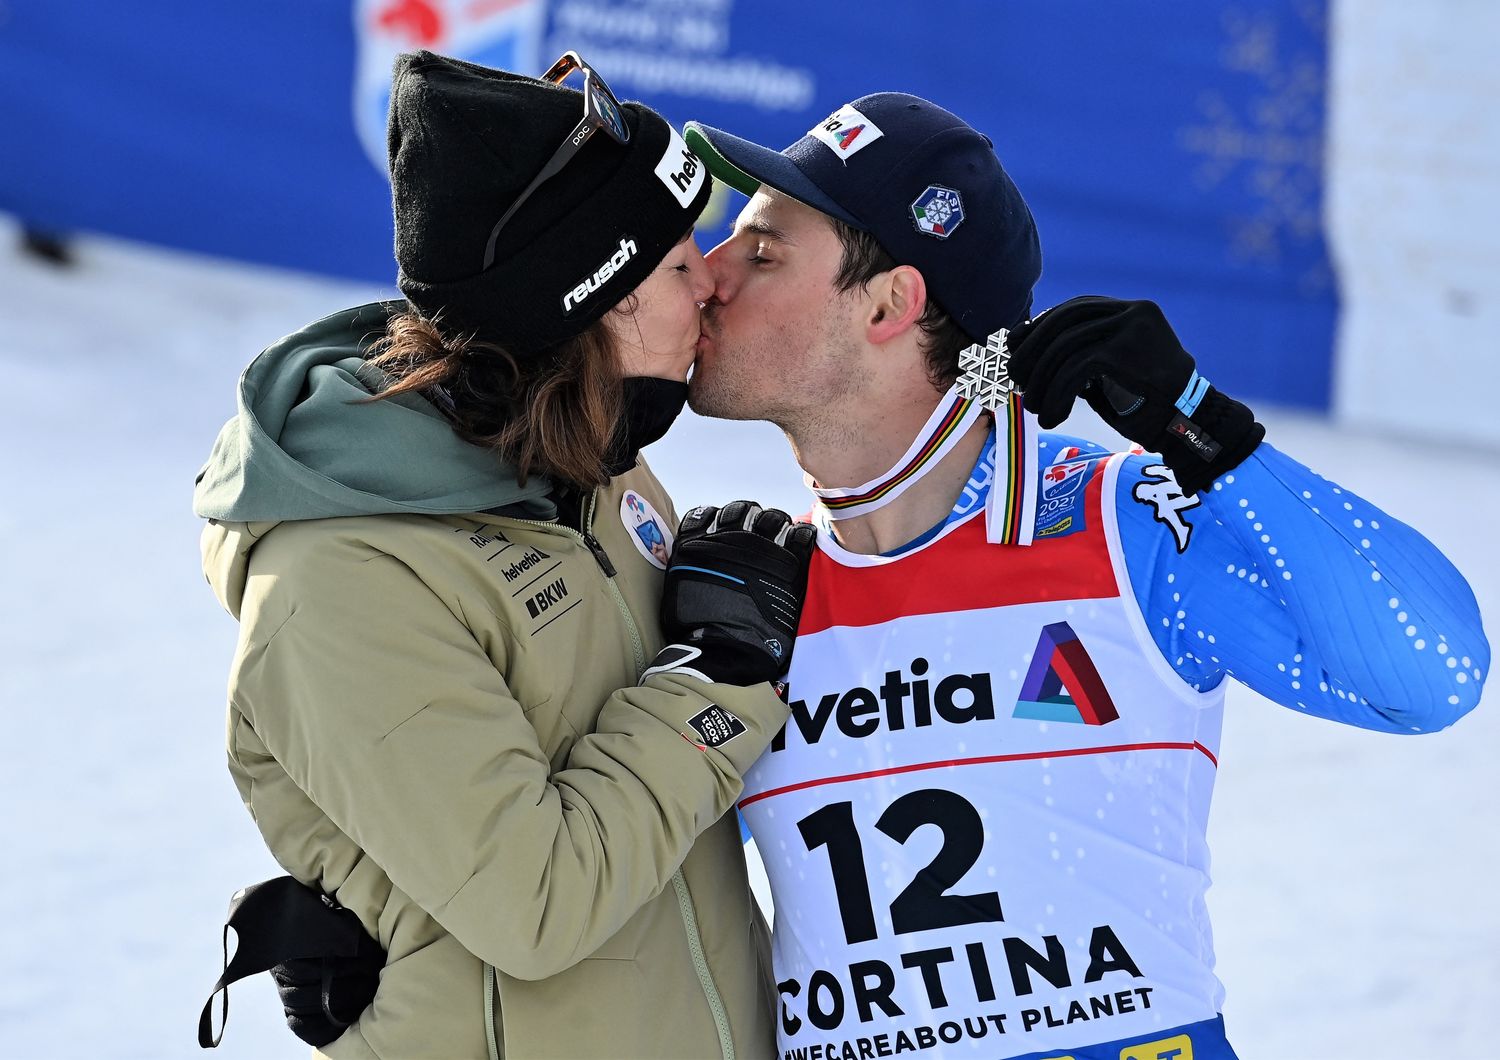 La sciatrice svizzera Michelle Gisin bacia il fidanzato Luca De Aliprandini, argento mondiale &nbsp;